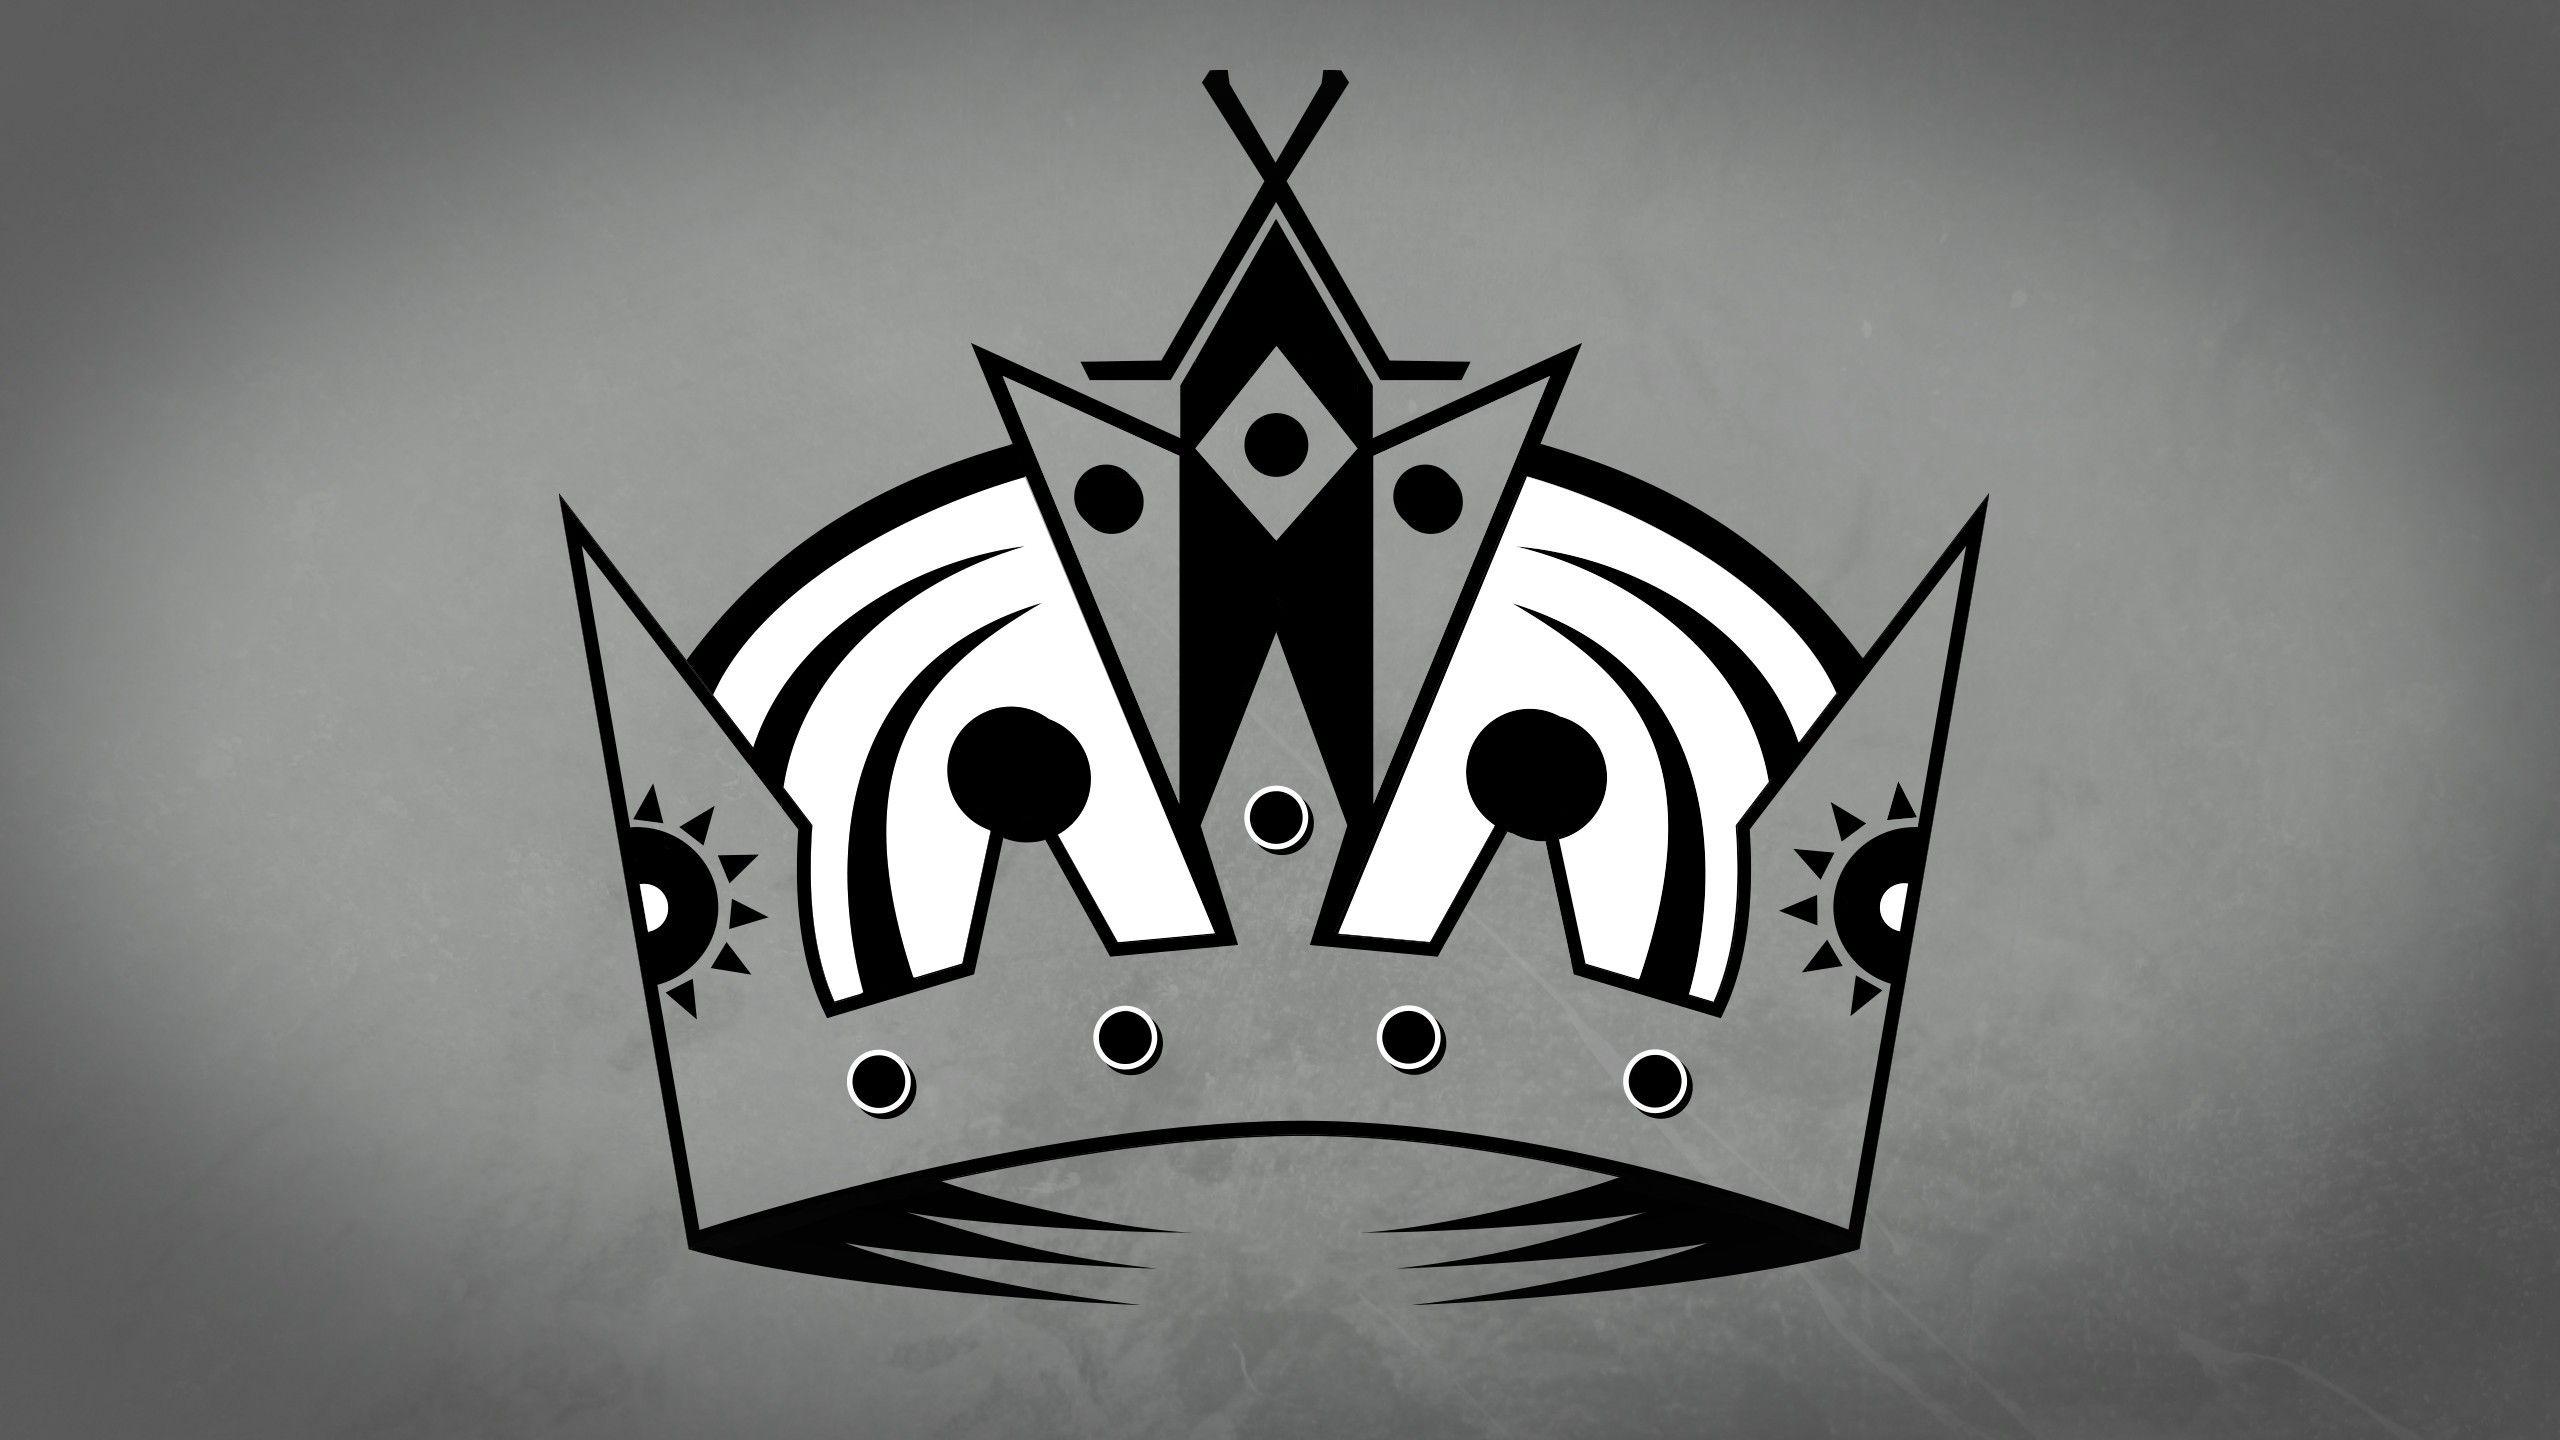 Wallpaper.wiki LA Kings Crown Logo Background PIC WPD008201